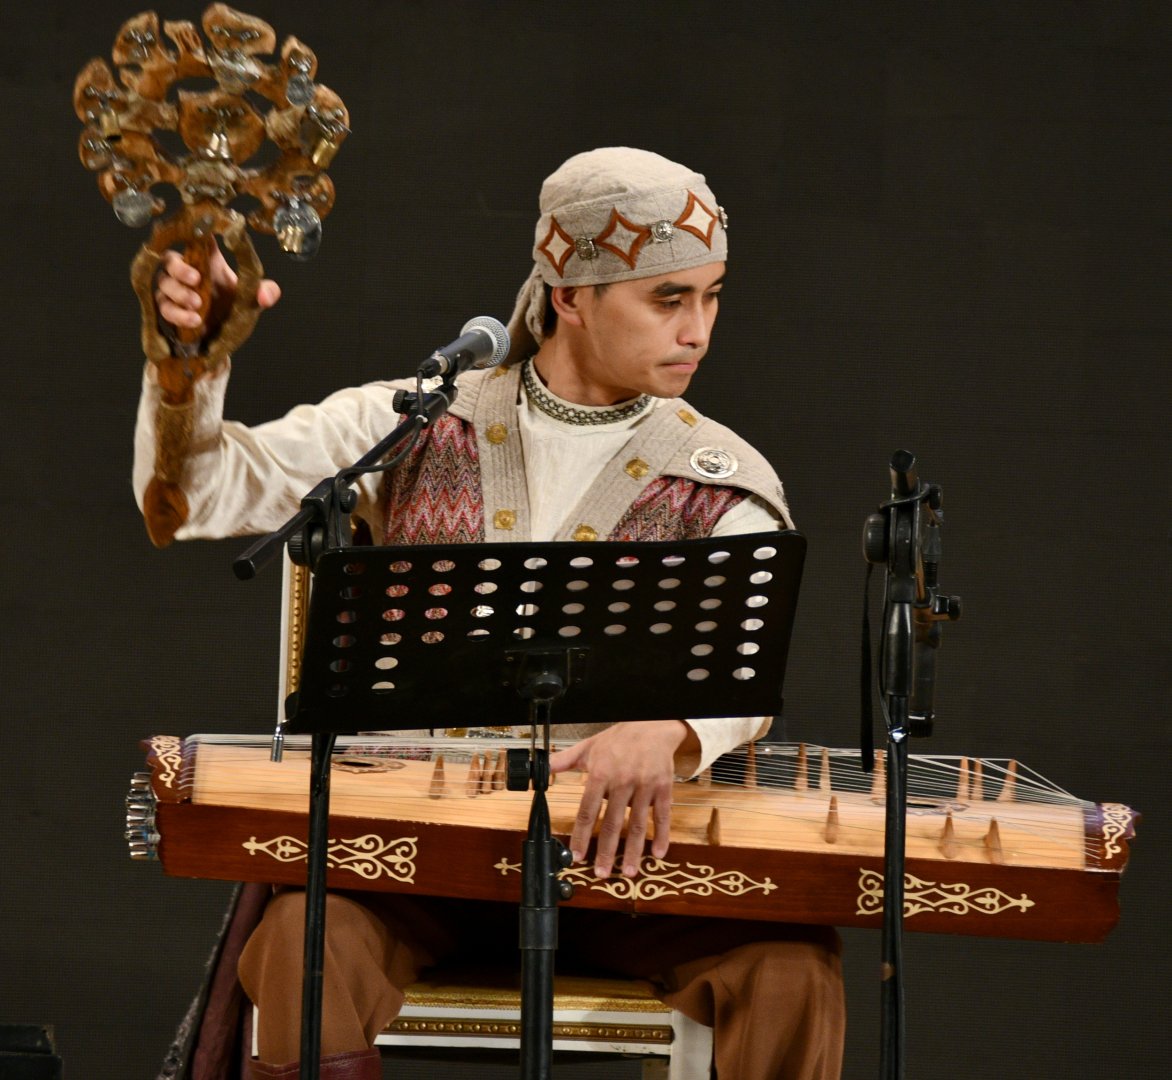 Большой праздник национальной музыки Азербайджана и Казахстана (ФОТО)